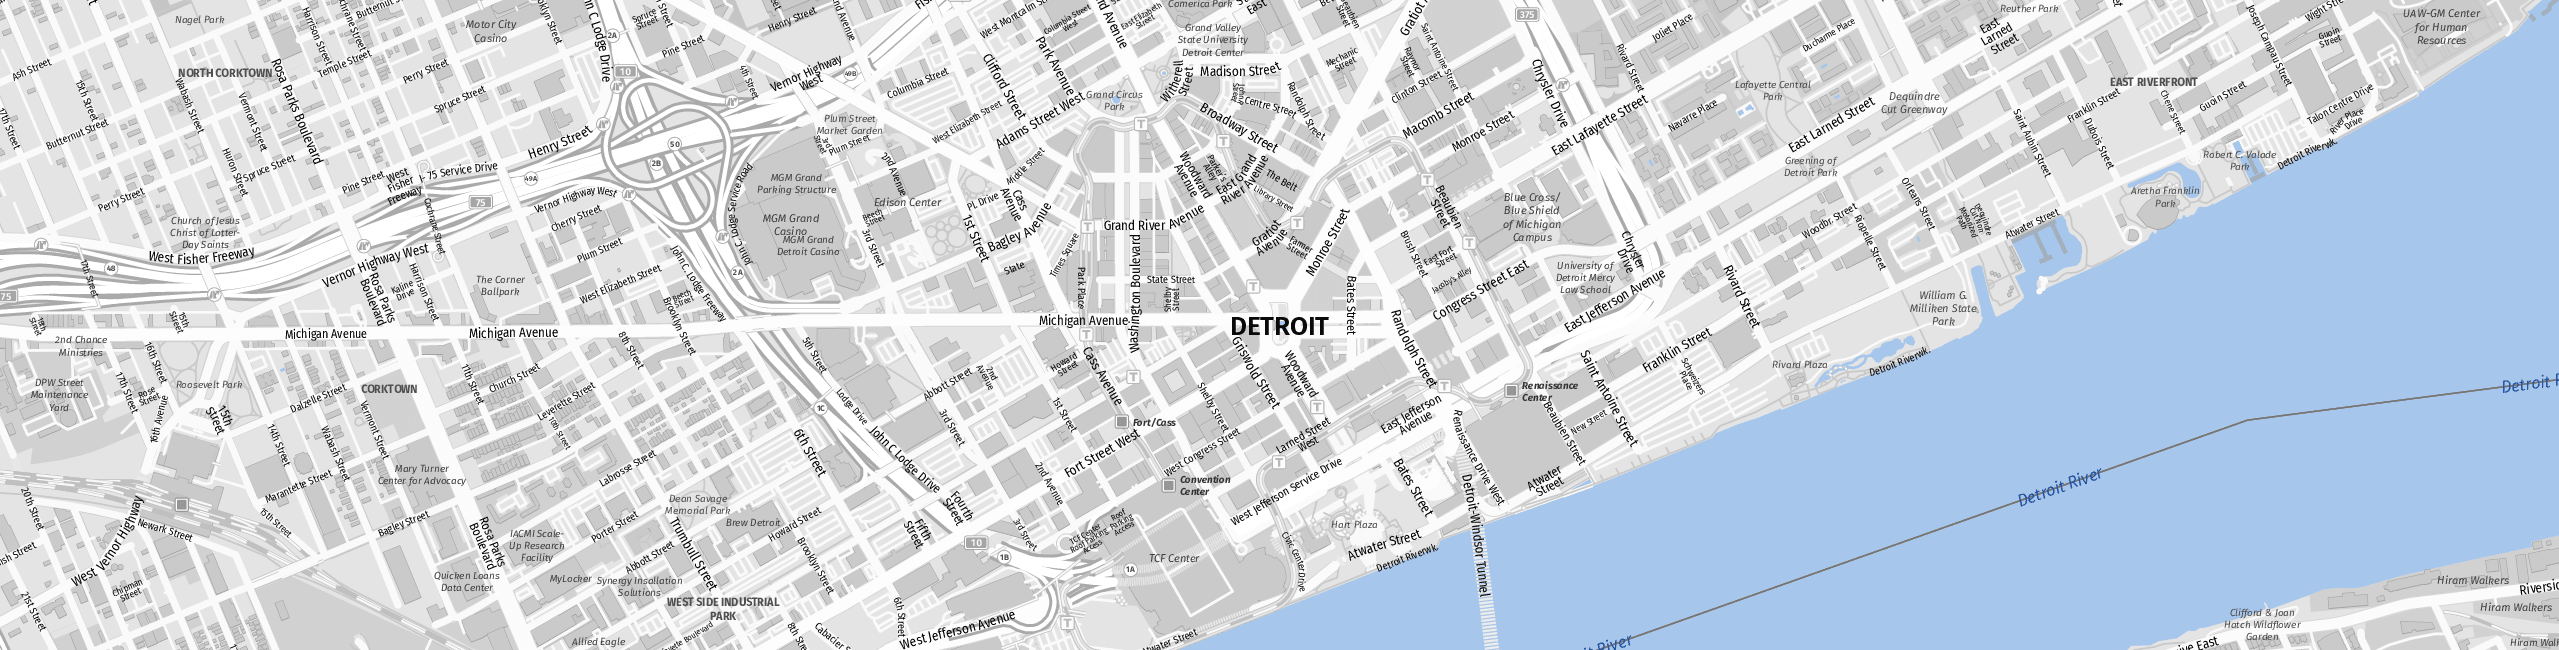 Stadtplan Detroit zum Downloaden.